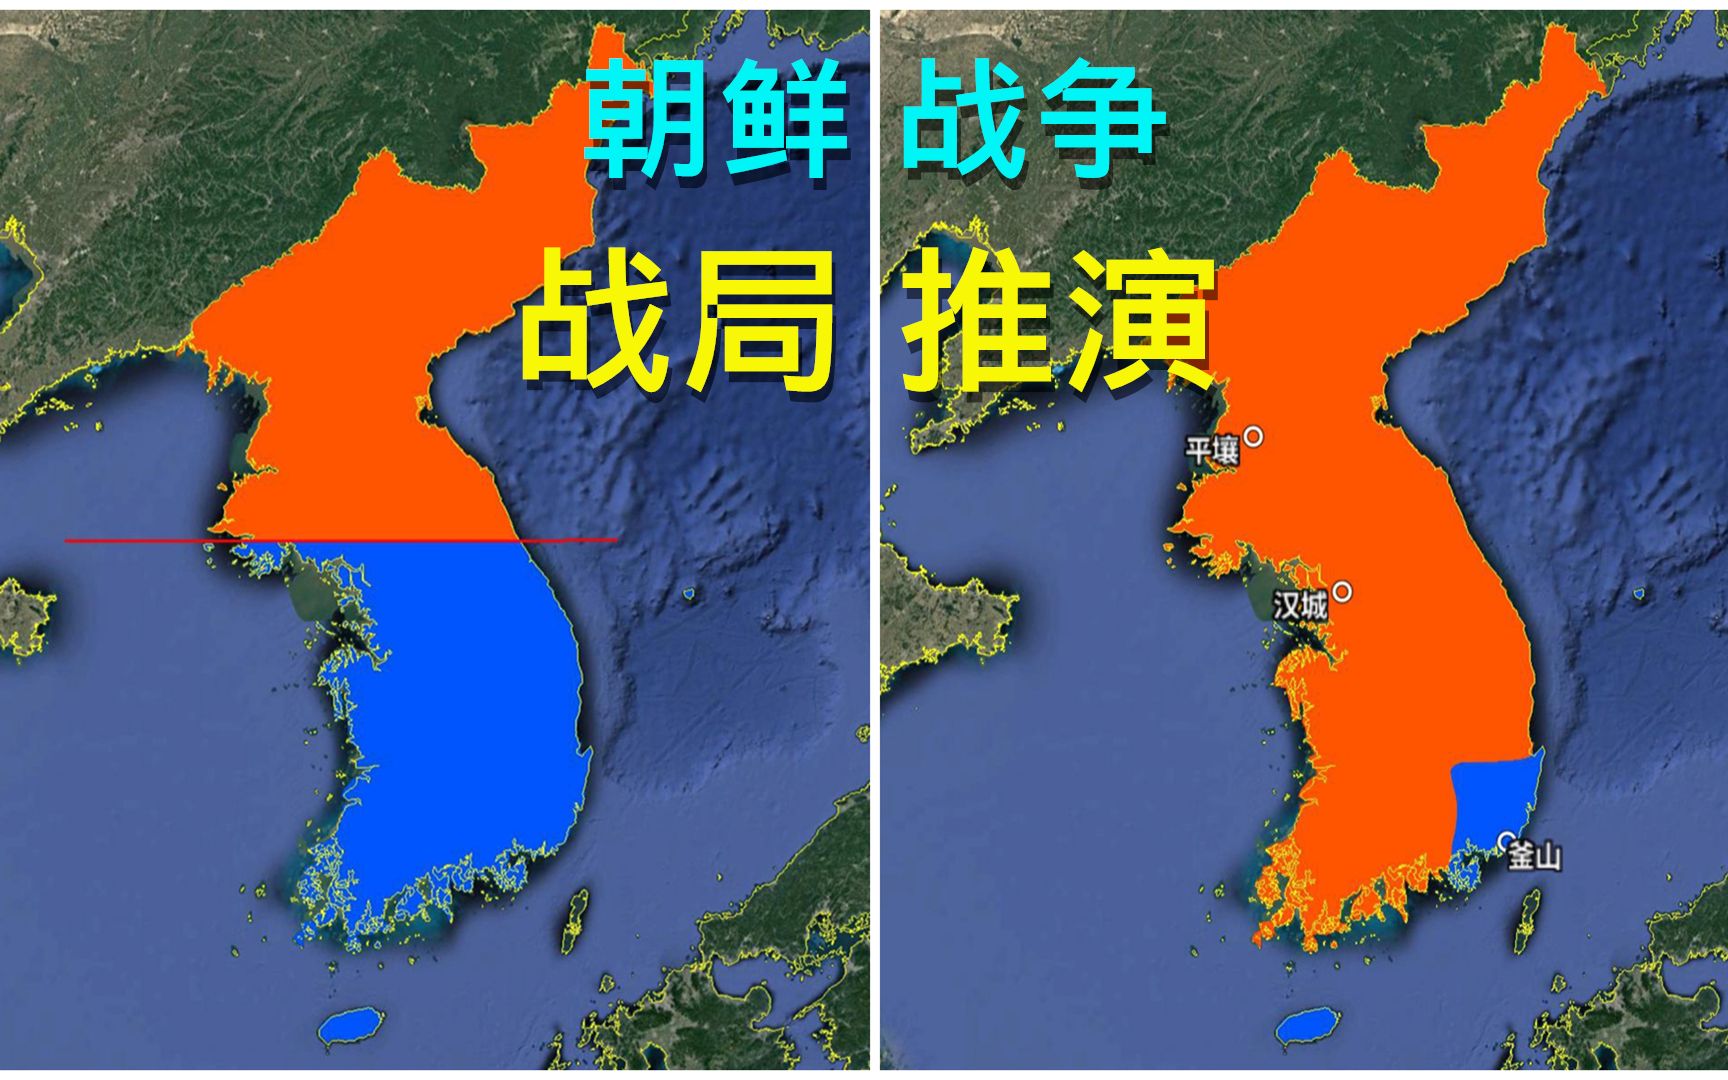 朝鲜中文版地图_朝鲜地图_初高中地理网